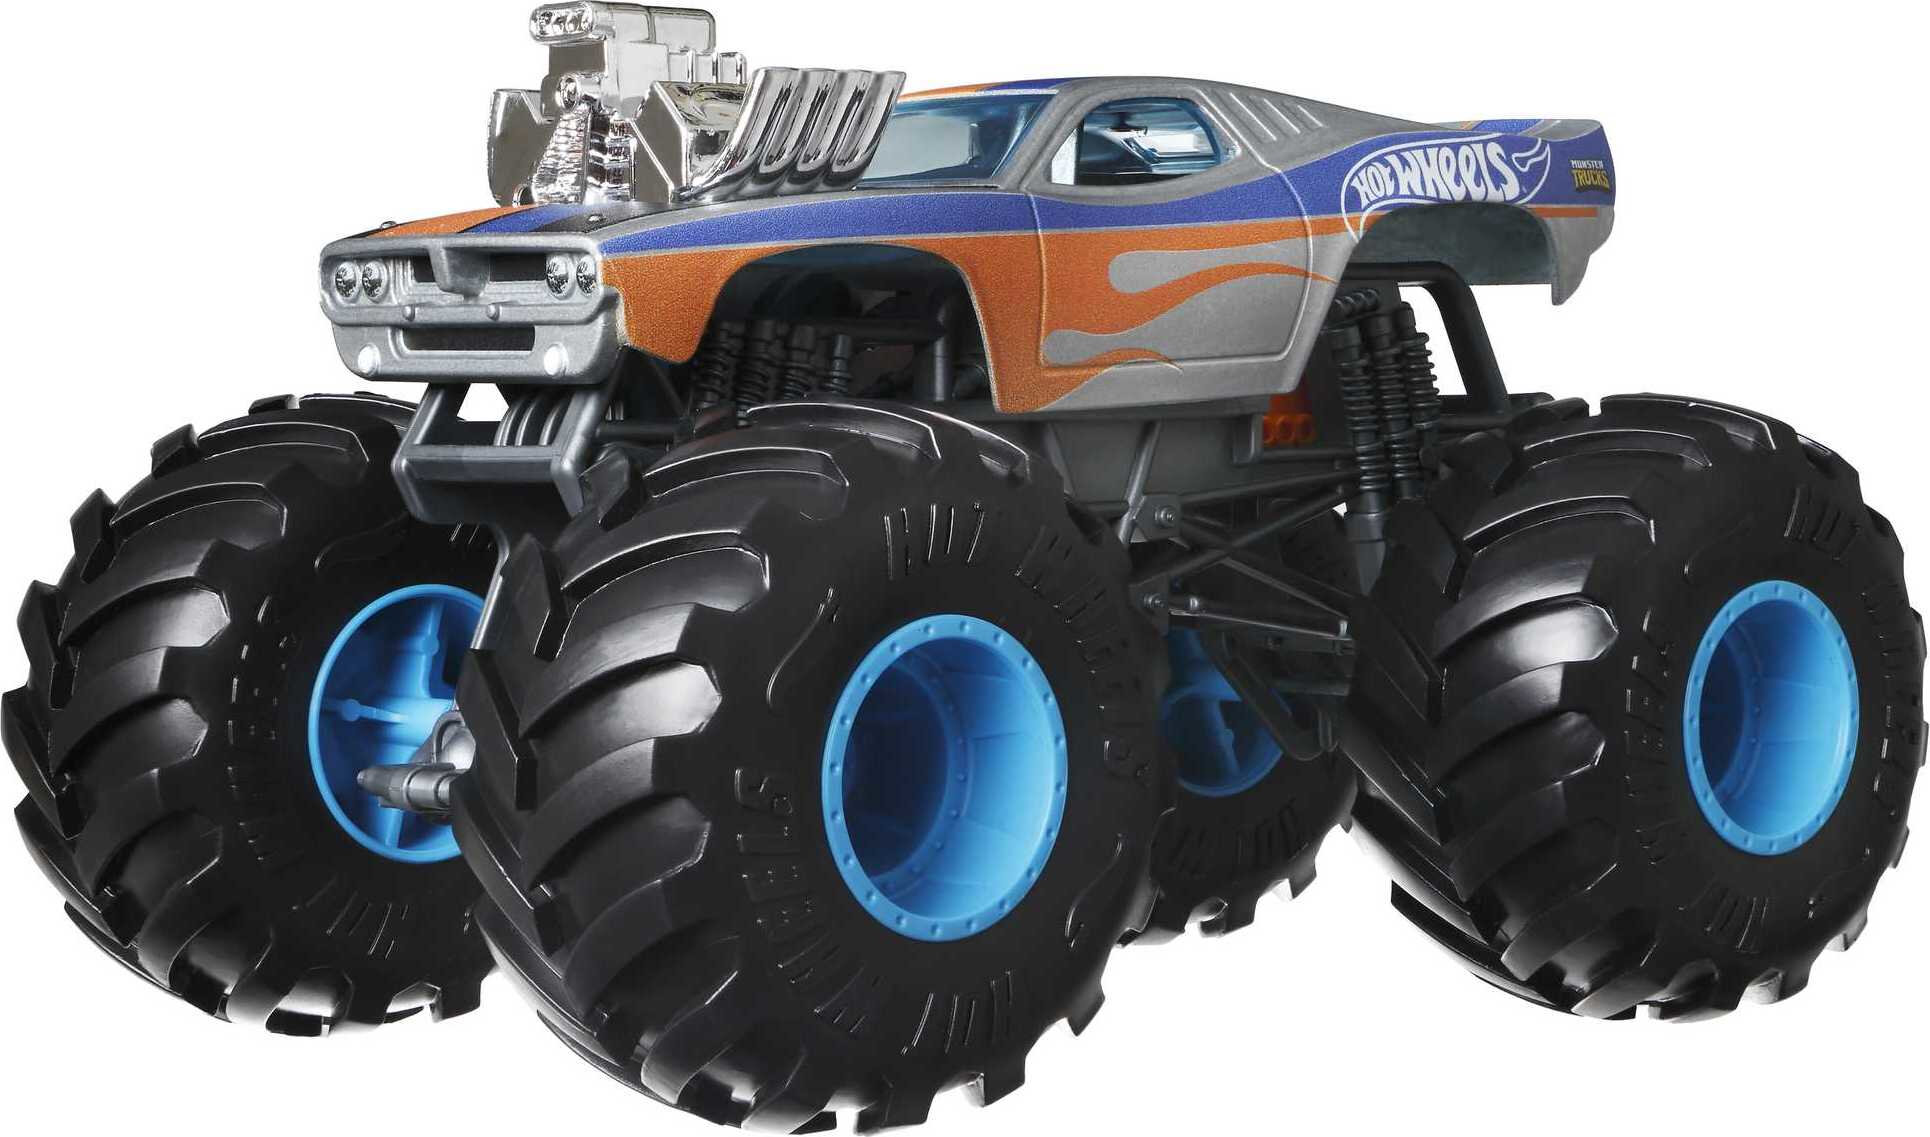 Hot Wheels Monster Trucks, Oversized Monster Truck in 1:24 Scale 